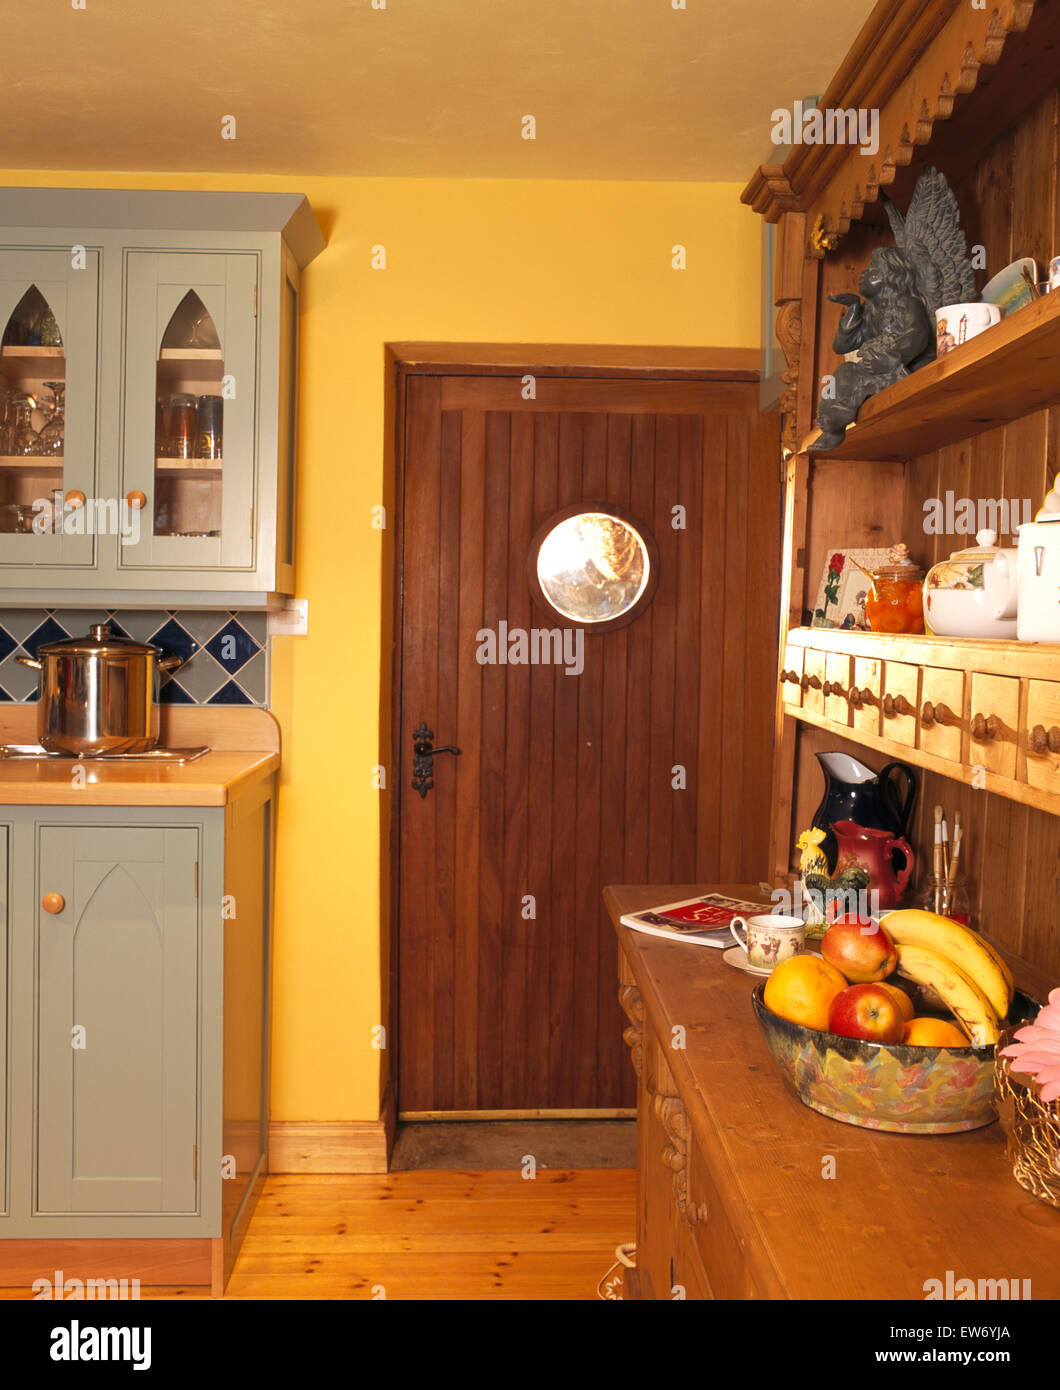 https://c8.alamy.com/comp/EW6YJA/dark-wood-door-and-wooden-dresser-in-yellow-nineties-kitchen-with-EW6YJA.jpg